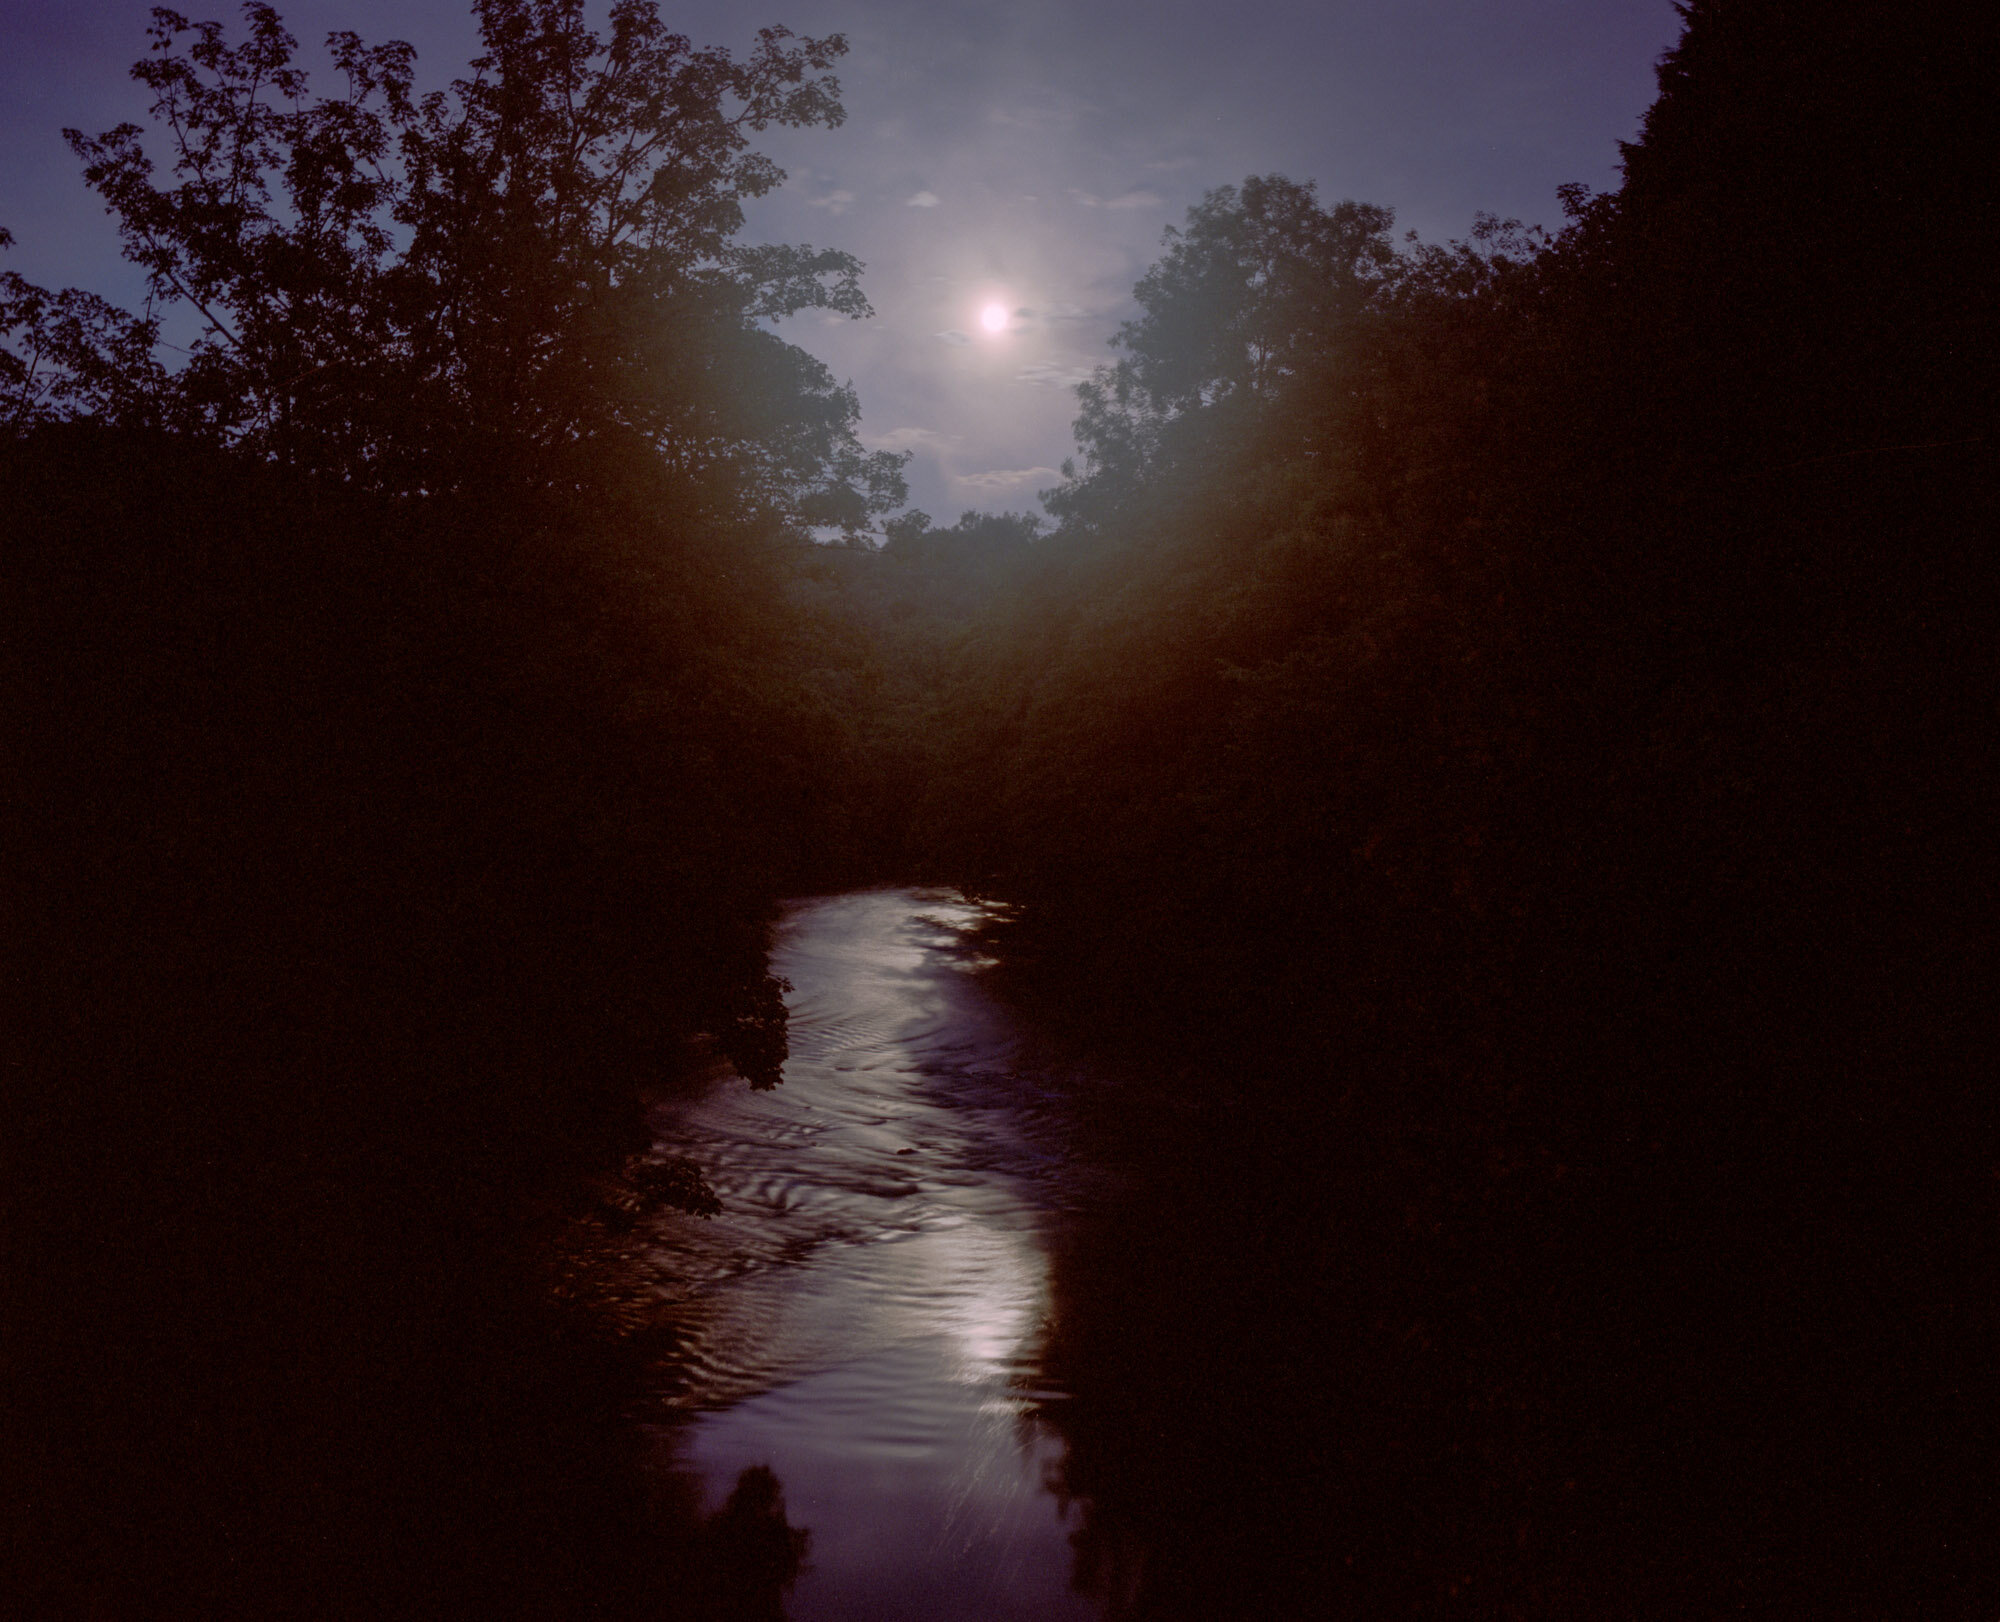  Full moon over the River Derwent, High Peak Junction. 